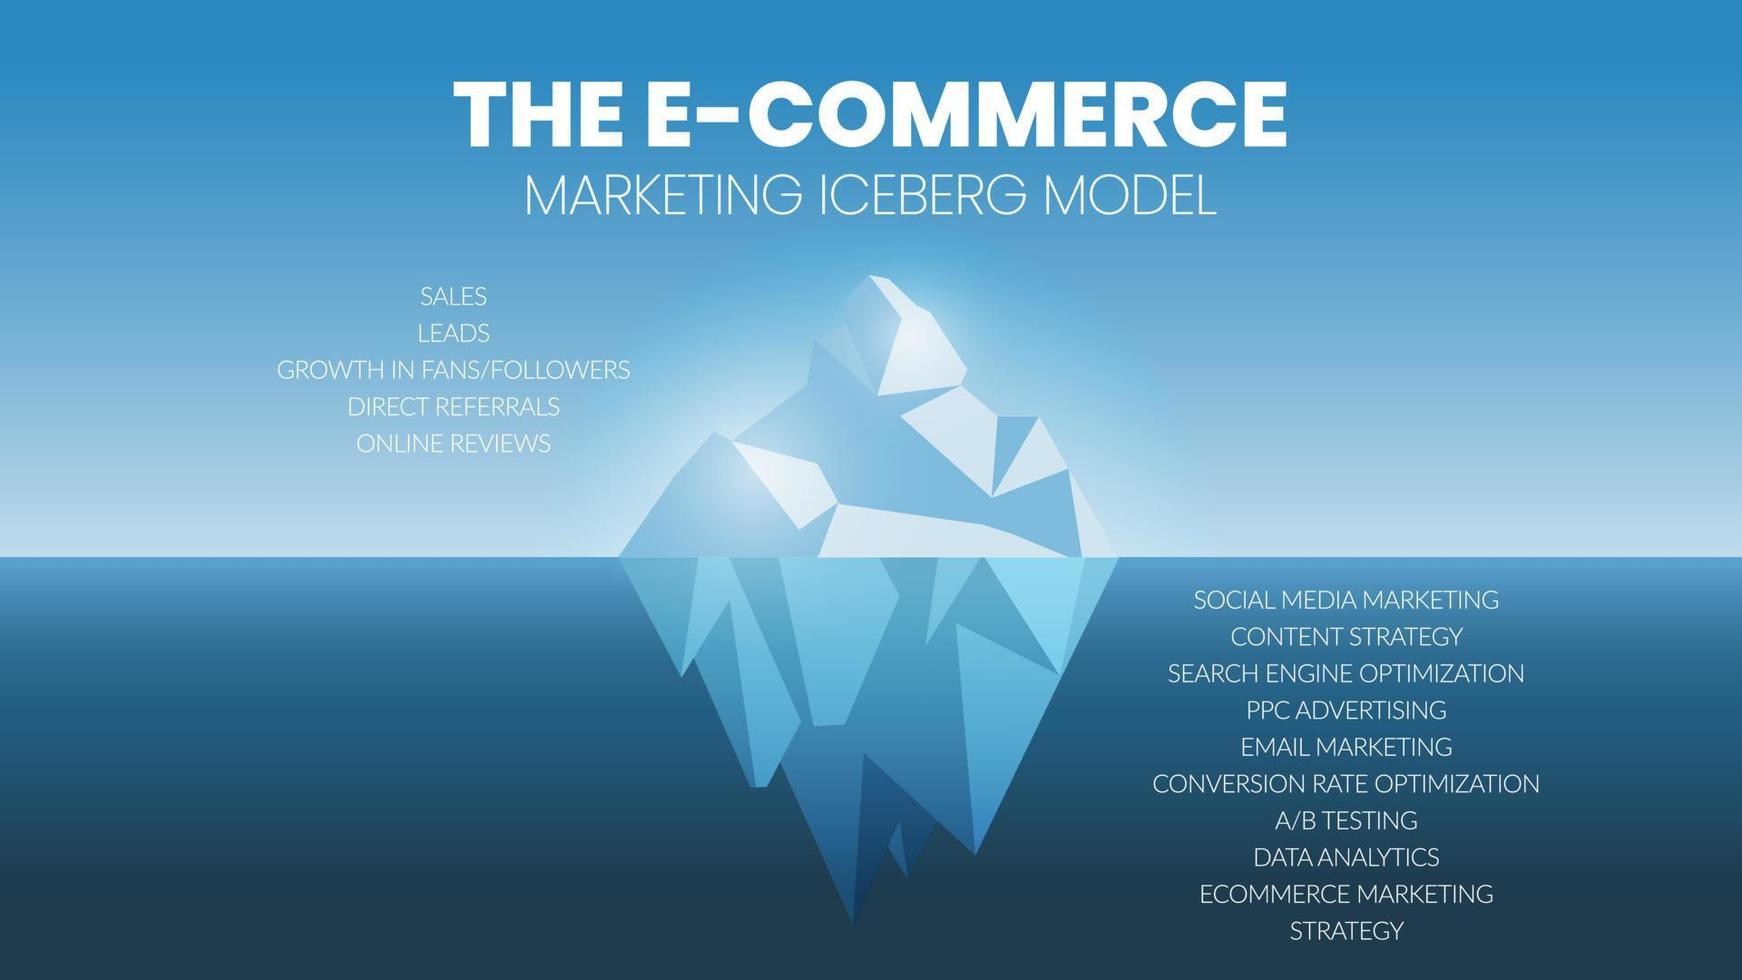 Eine Vektor-Infografik eines E-Commerce-Eisberg-Modellkonzepts enthält Verkäufe, Leads, Wachstumsfans und Follower, direkte Empfehlungen und Online-Bewertungen. Das Unterwasser hat Content- und Social-Media-Marketing vektor